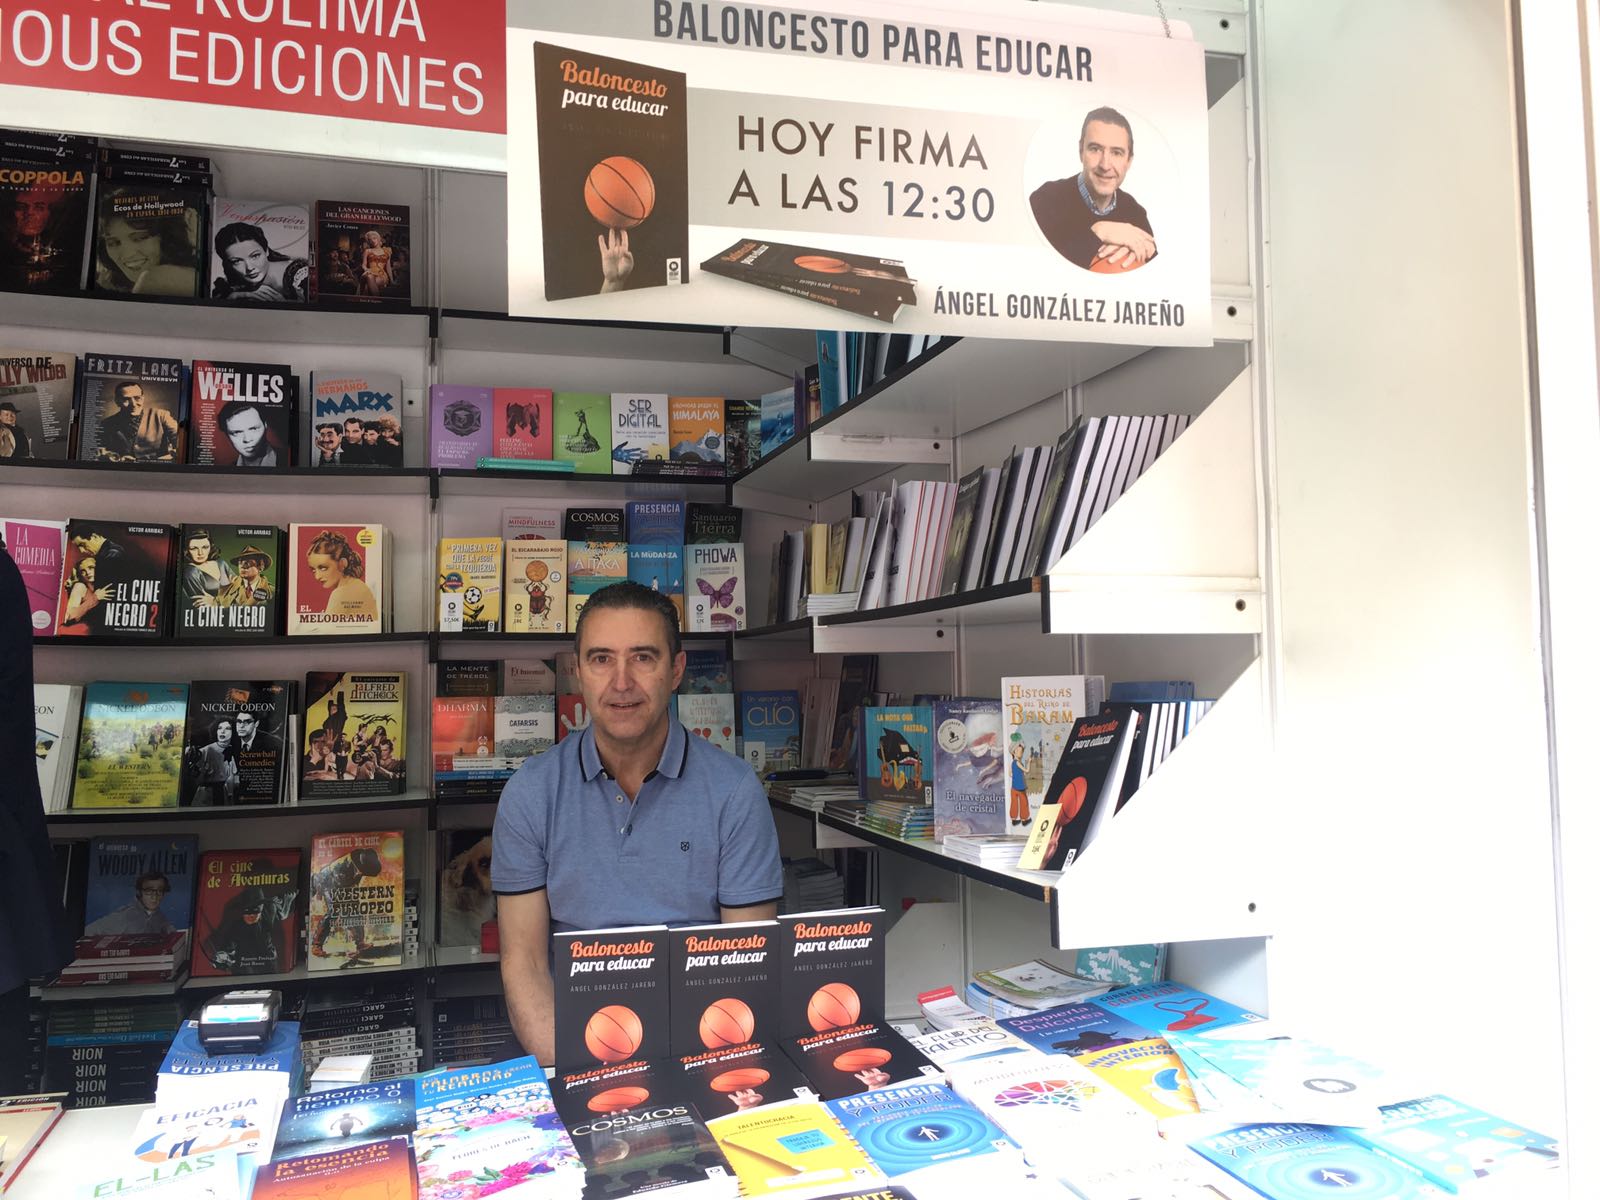 Fotografía de Ángel González Jareño en la Feria del libro 2018